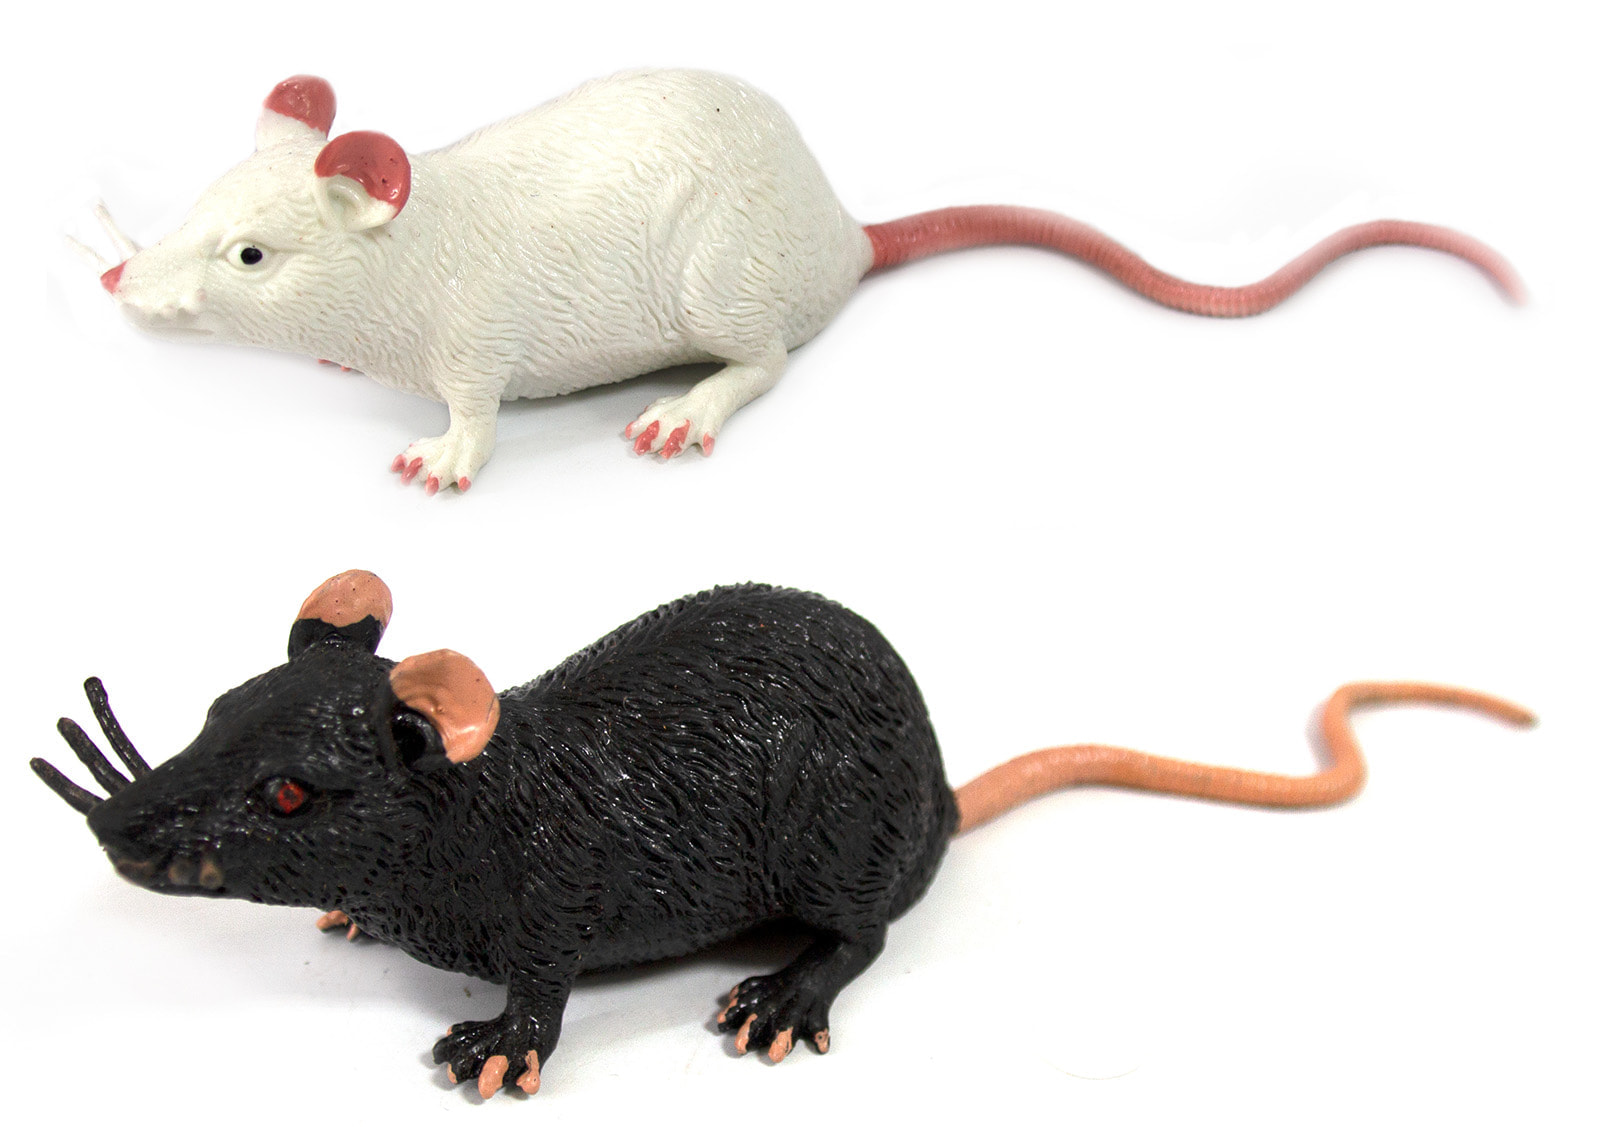 Животные-тянучки Антистресс «Мышки» из термопластичной резины 17 см., 2 шт. НА027Р